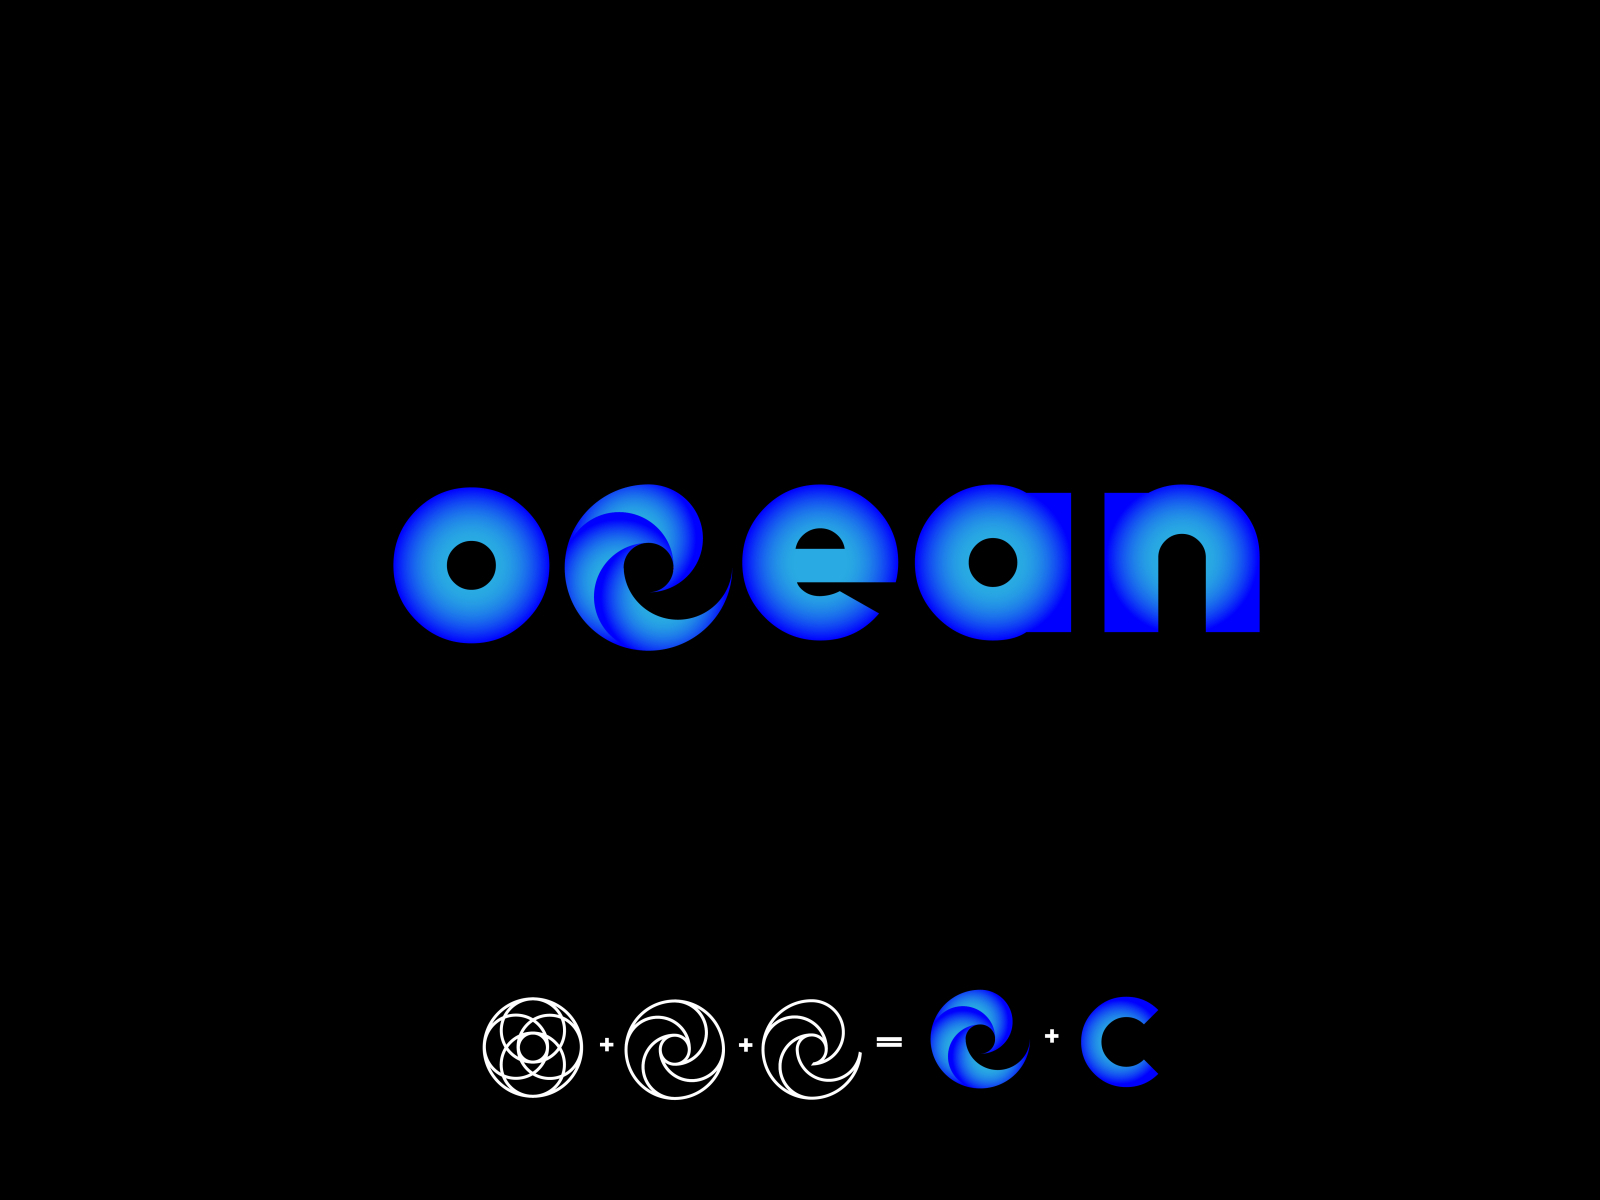 OCEAN LOGO by AMIR HOSSEN on Dribbble